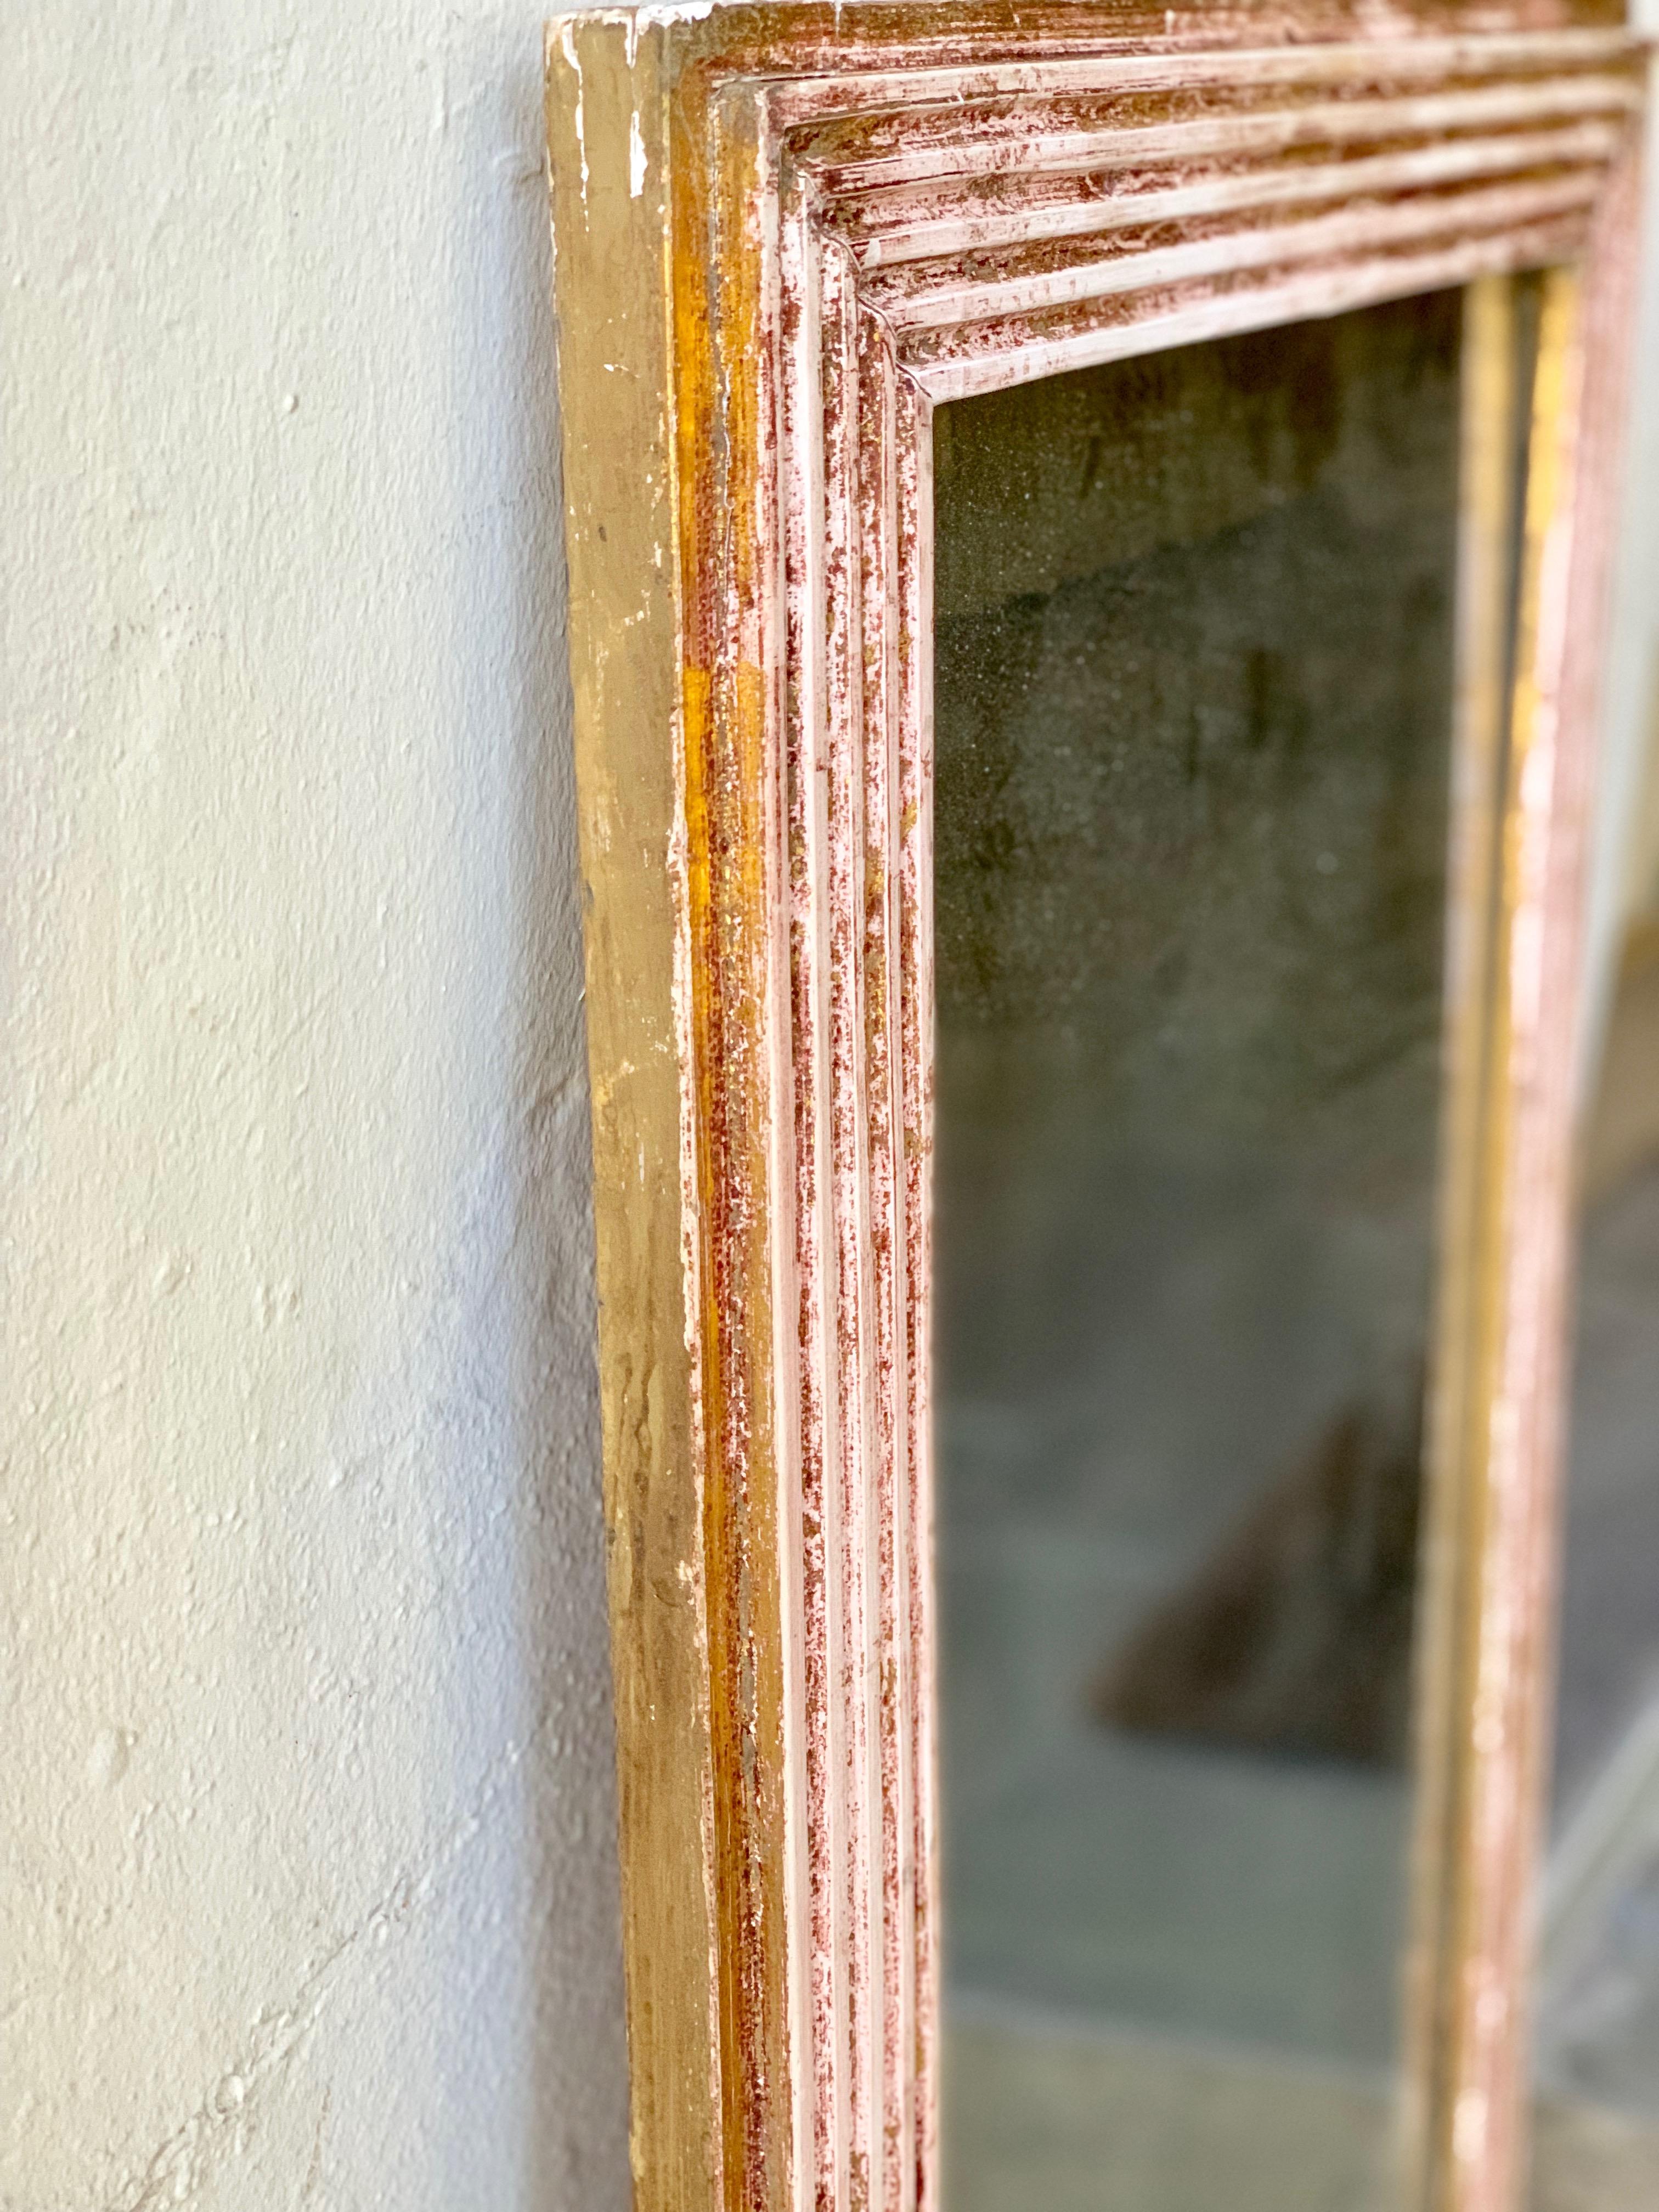 Ein französischer Directoire-Spiegel aus dem 19. Jahrhundert mit einigen originalen vergoldeten Akzenten. Der Rahmen ist geschnitzt und hebt die Vergoldung und das Quecksilberglas hervor.